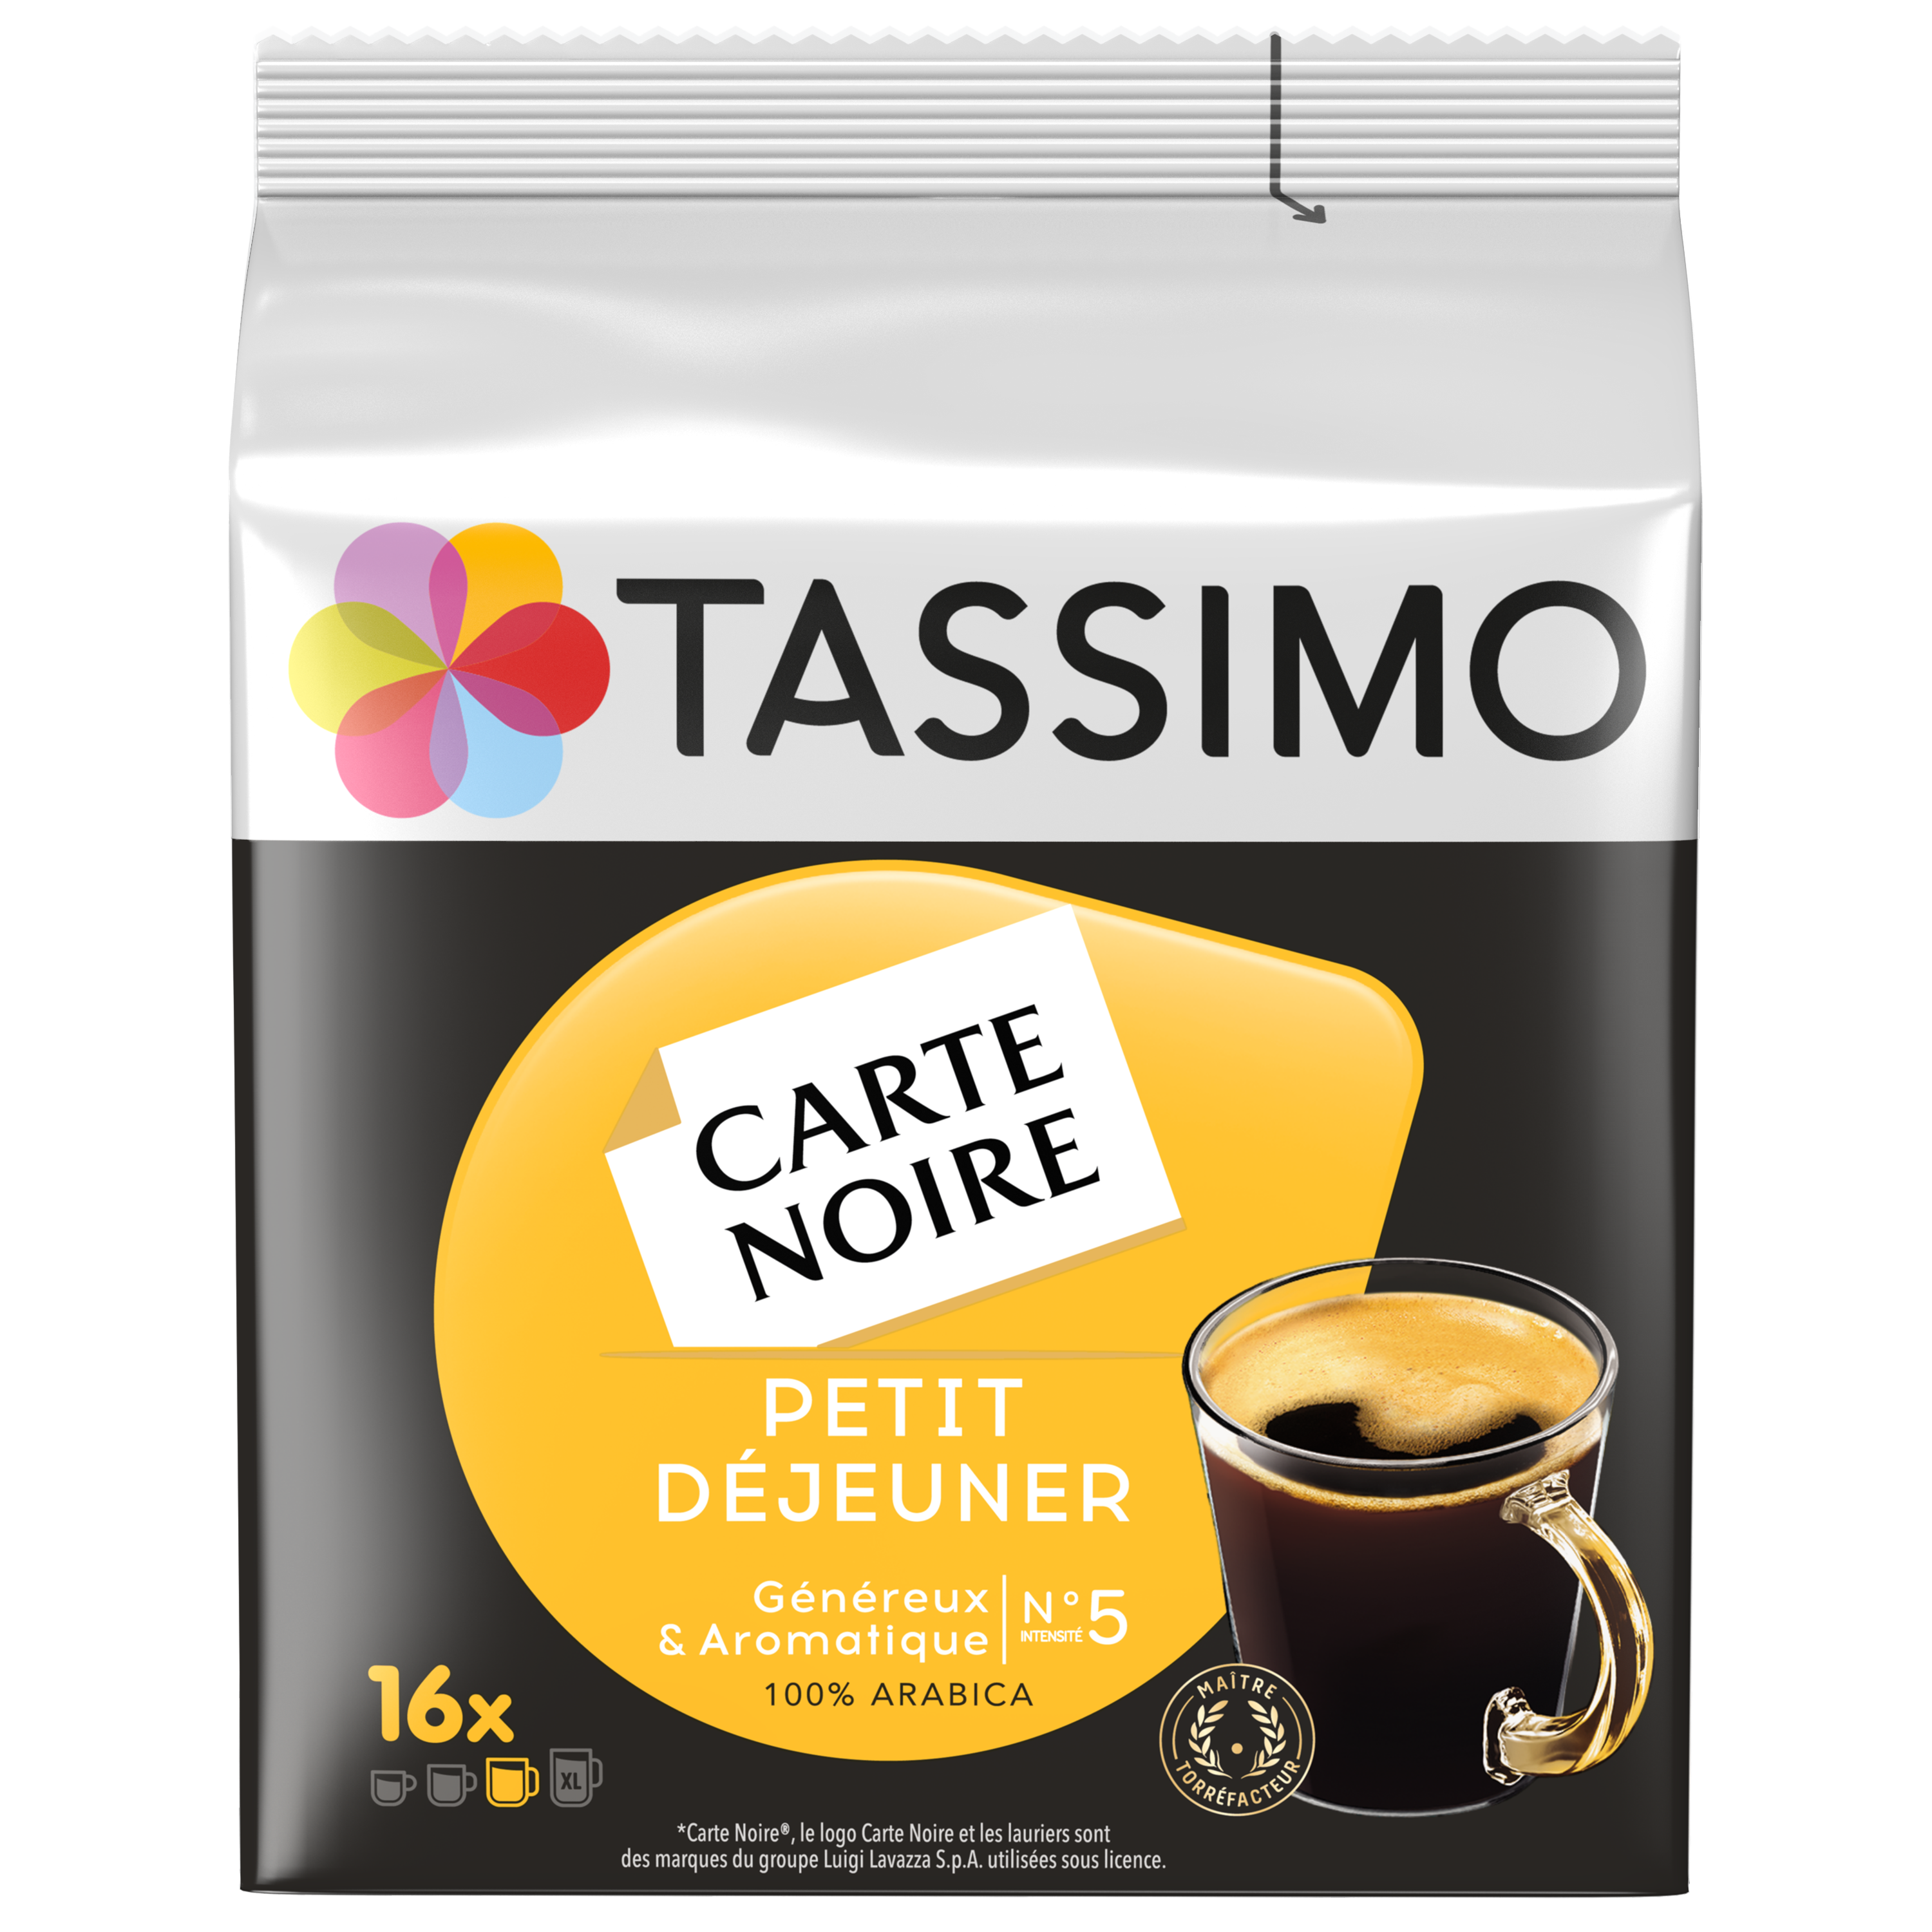 TASSIMO Carte Noire café petit déjeuner 16 dosettes 133g pas cher 